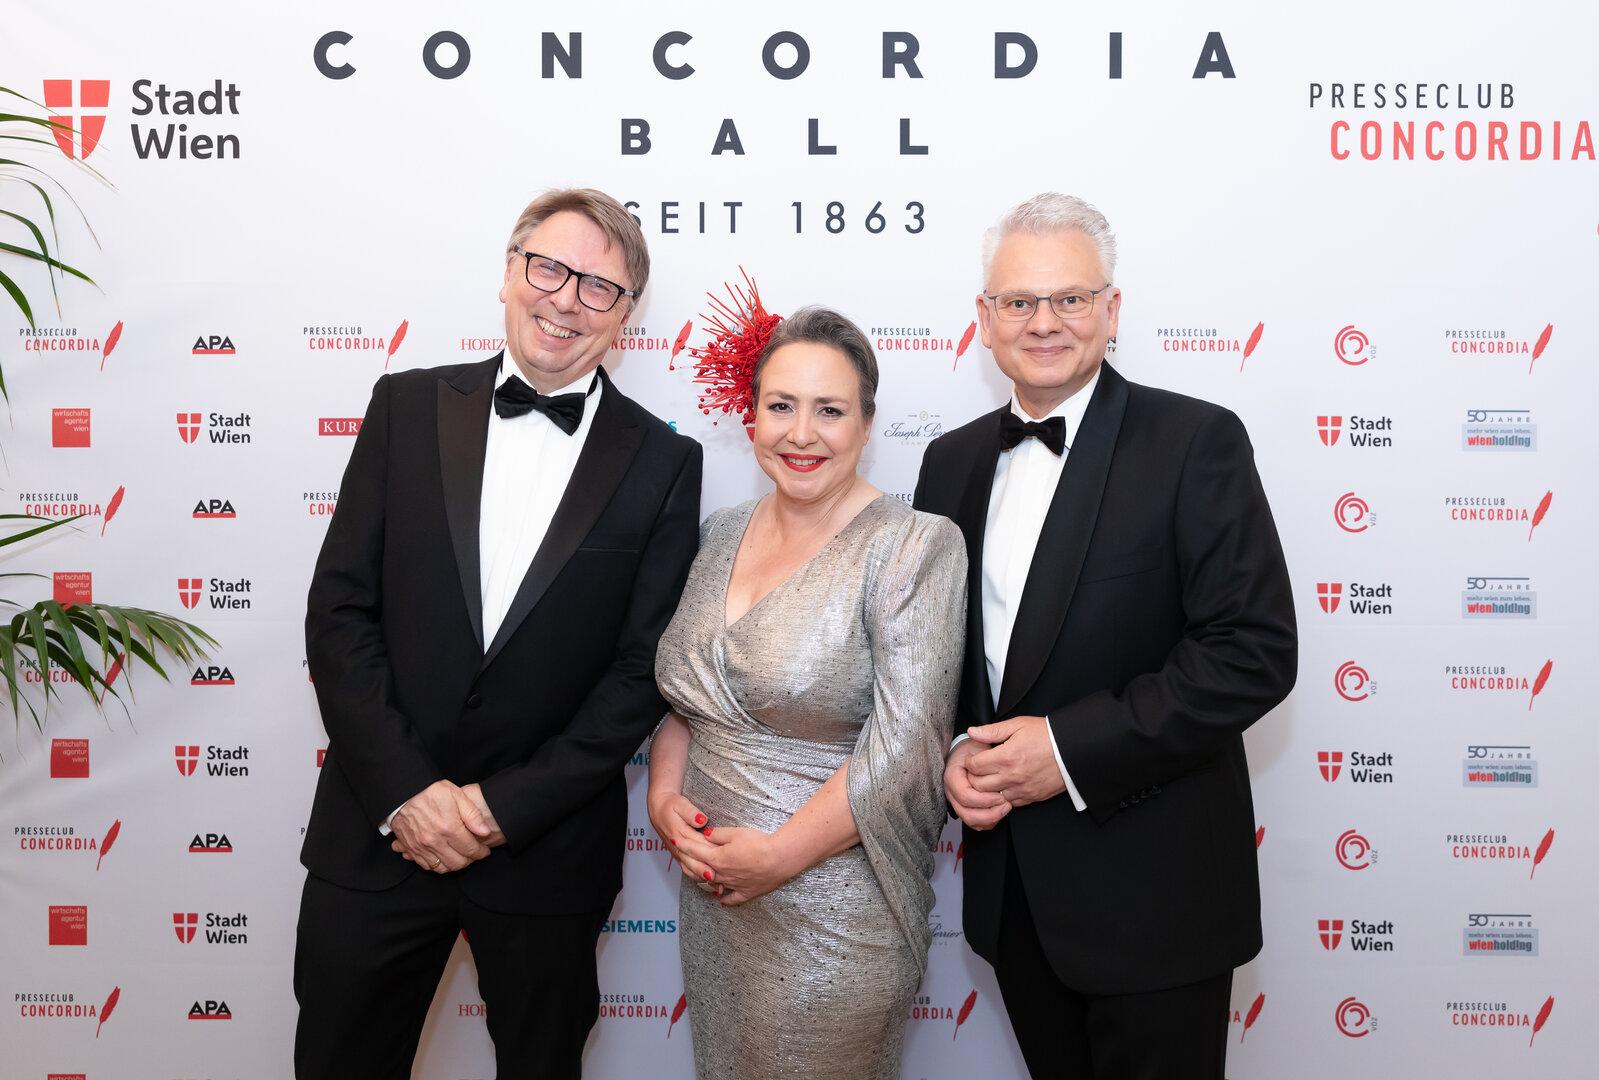 Beim Concordia Ball wurde für die Pressefreiheit getanzt